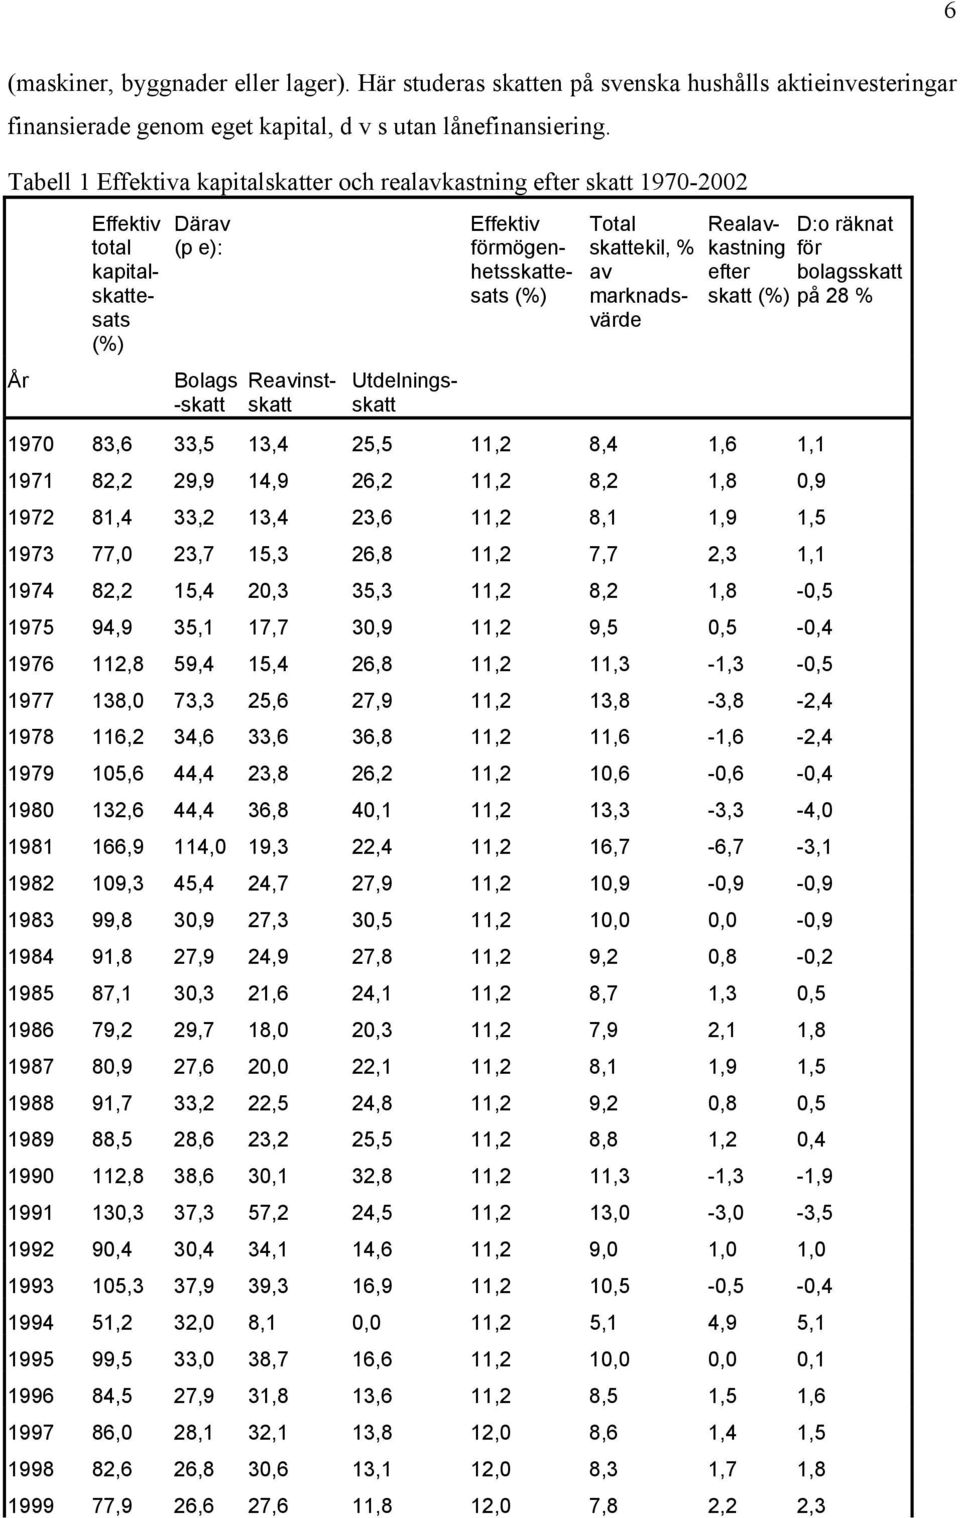 förmögenhetsskattesats (%) Total skattekil, % av marknadsvärde Realavkastning för D:o räknat efter bolagsskatt skatt (%) på 28 % 1970 83,6 33,5 13,4 25,5 11,2 8,4 1,6 1,1 1971 82,2 29,9 14,9 26,2